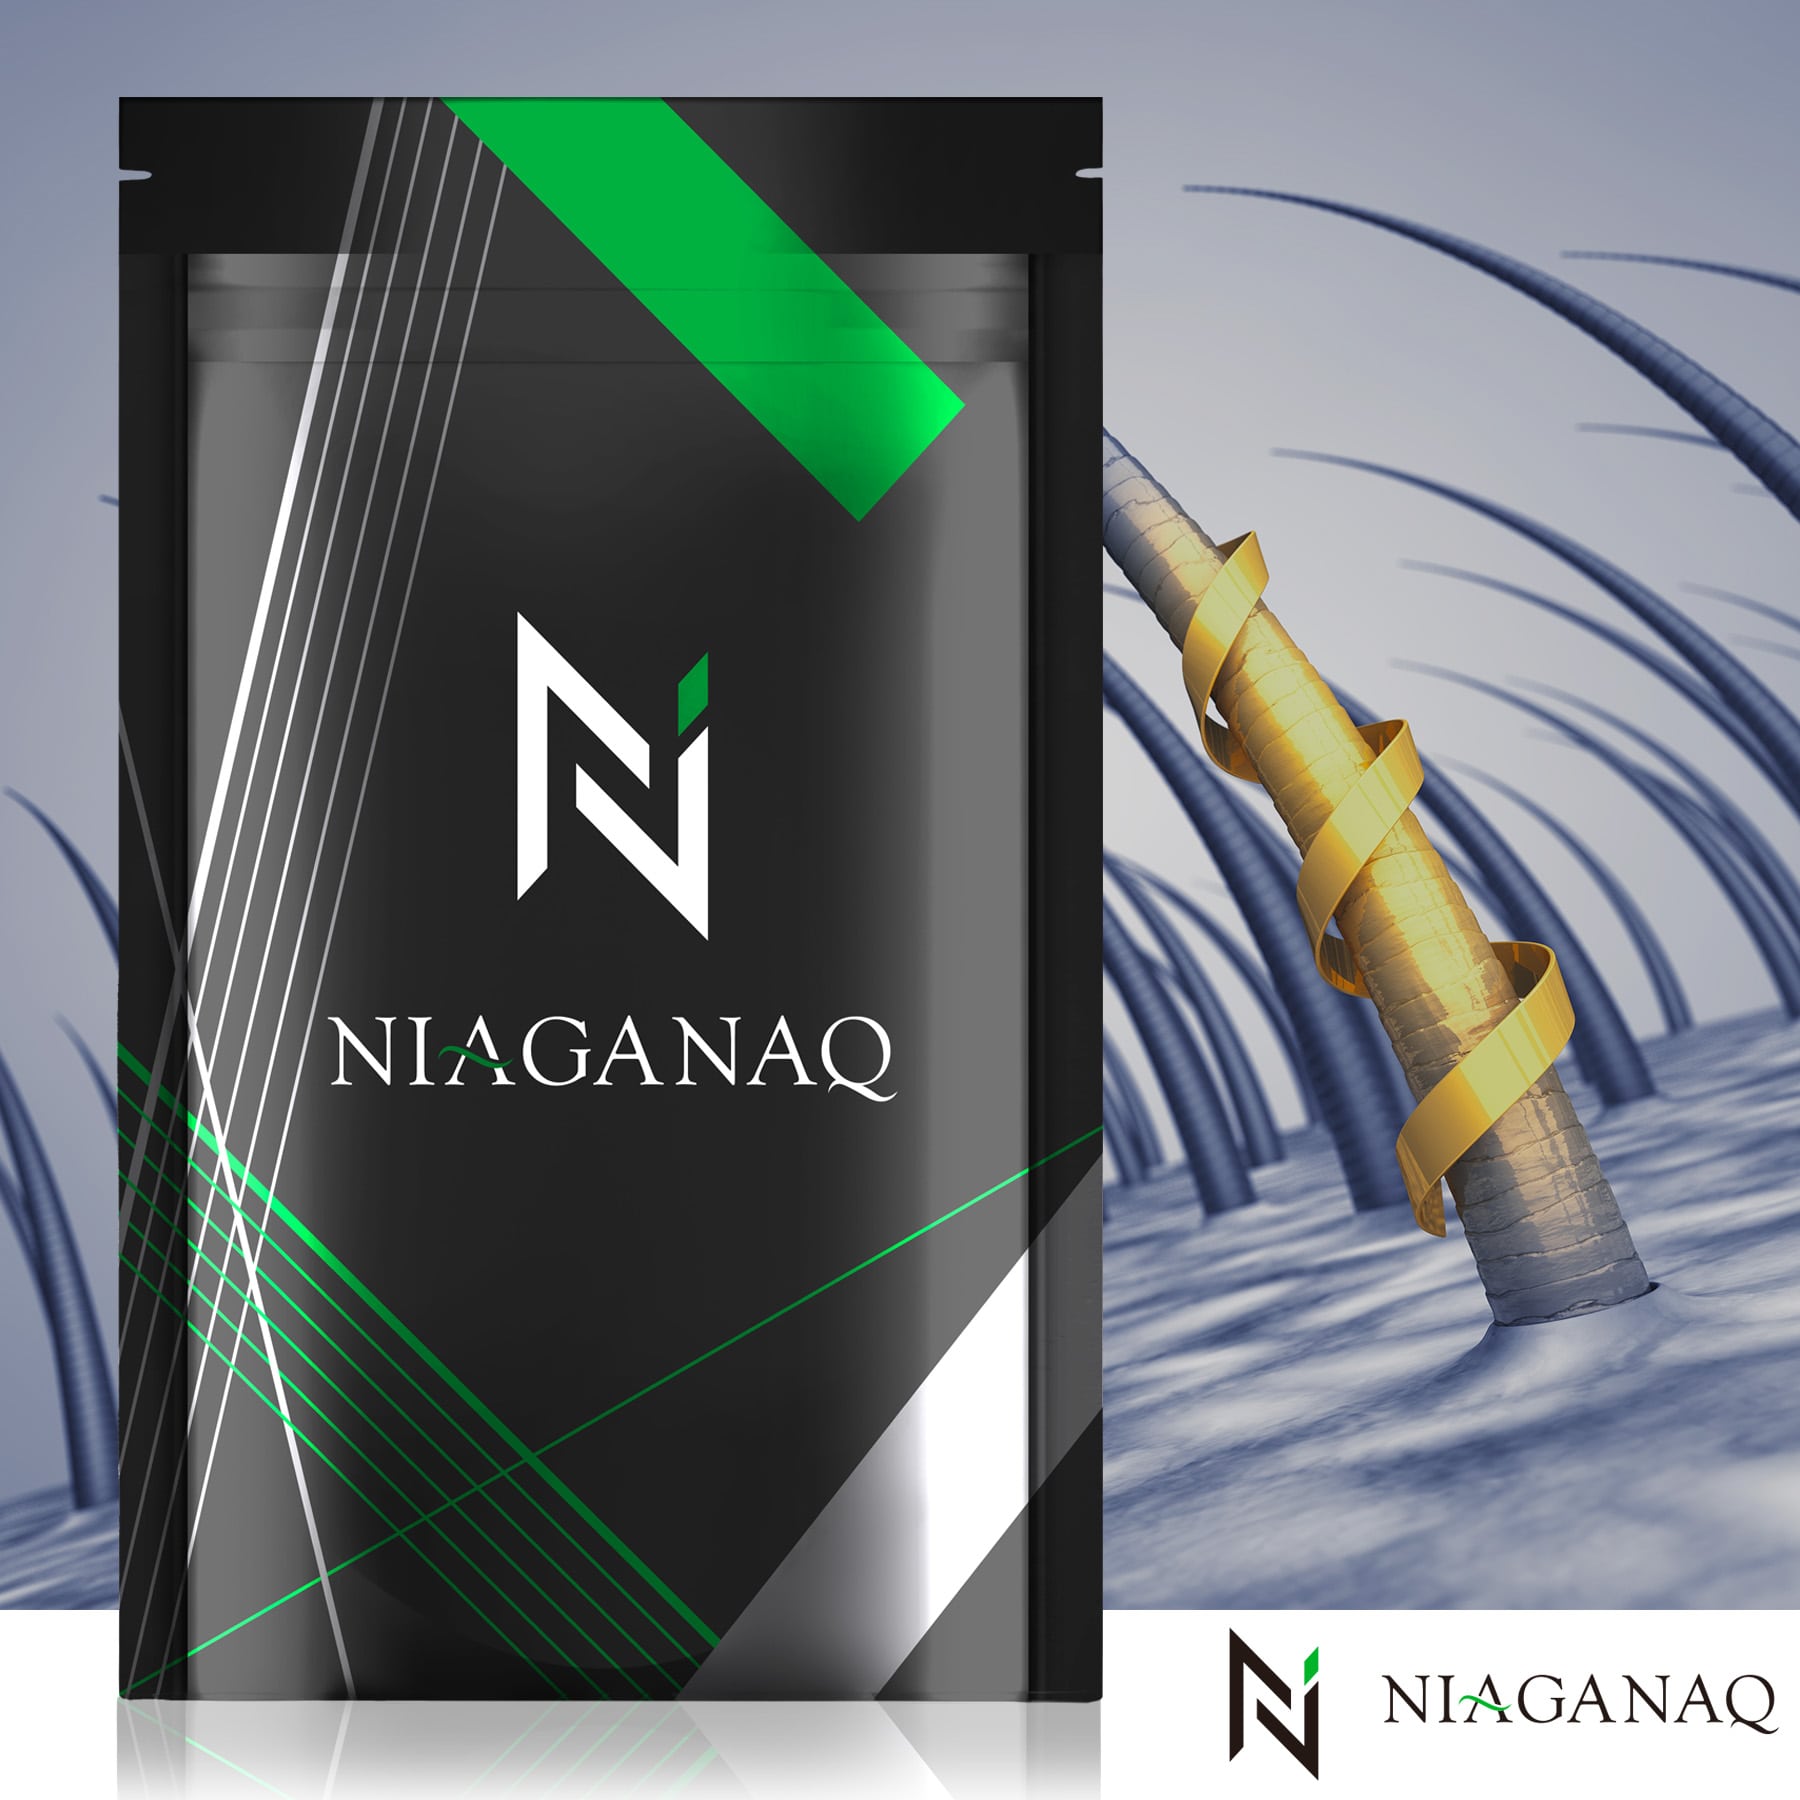 【3個セット】NIAGANAQ アナゲイン3300mg ノコギリヤシ 亜鉛 イソフラボン 厳選12成分 GMP認定工場 30日分 3個セット